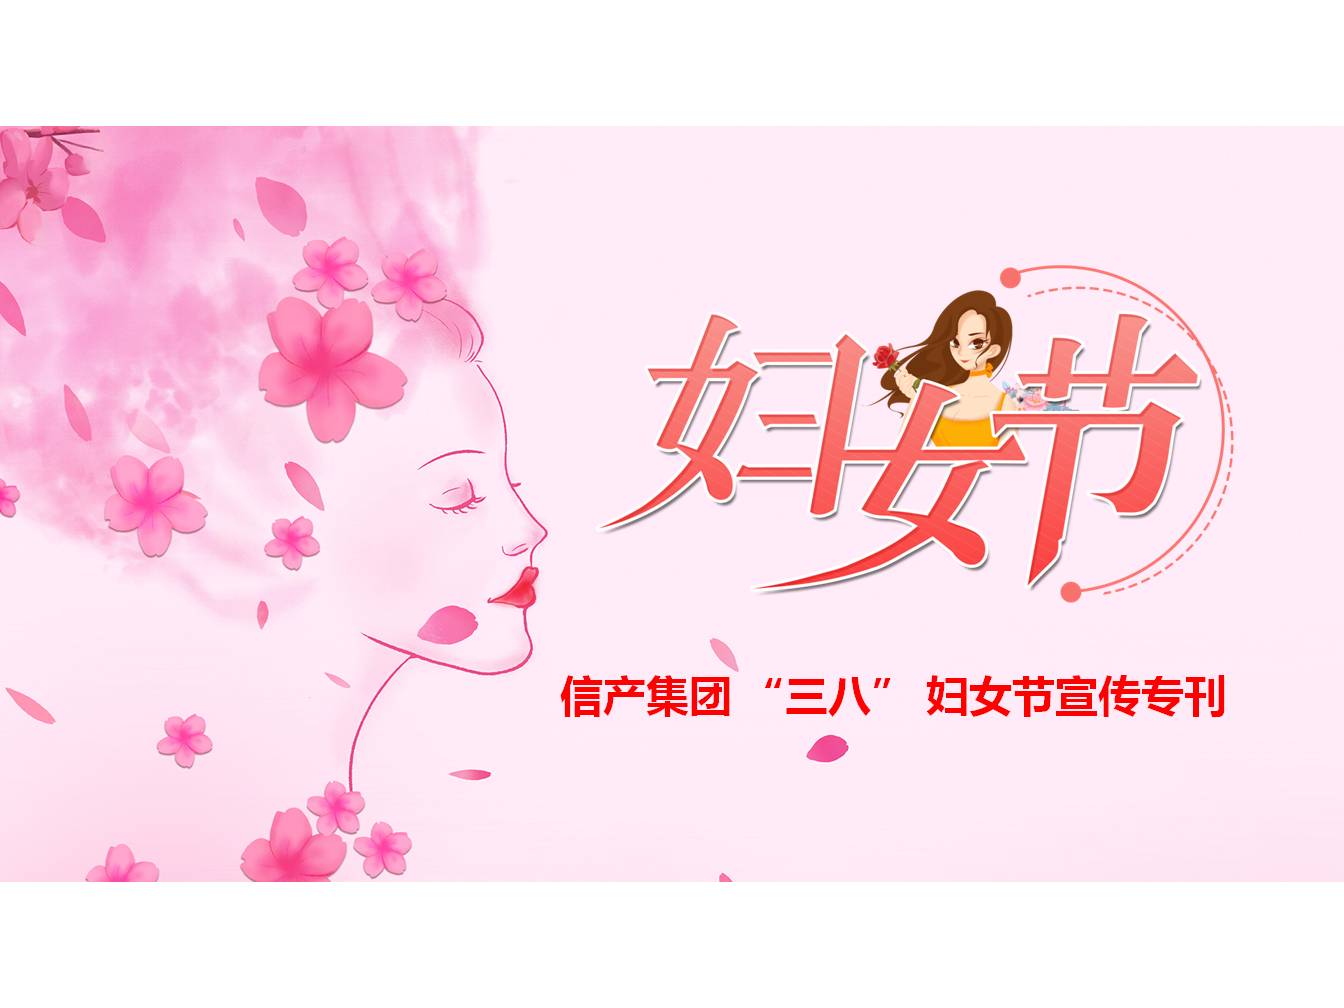 LoL比赛押注官网(中国)有限公司 “三八” 妇女节宣传专刊